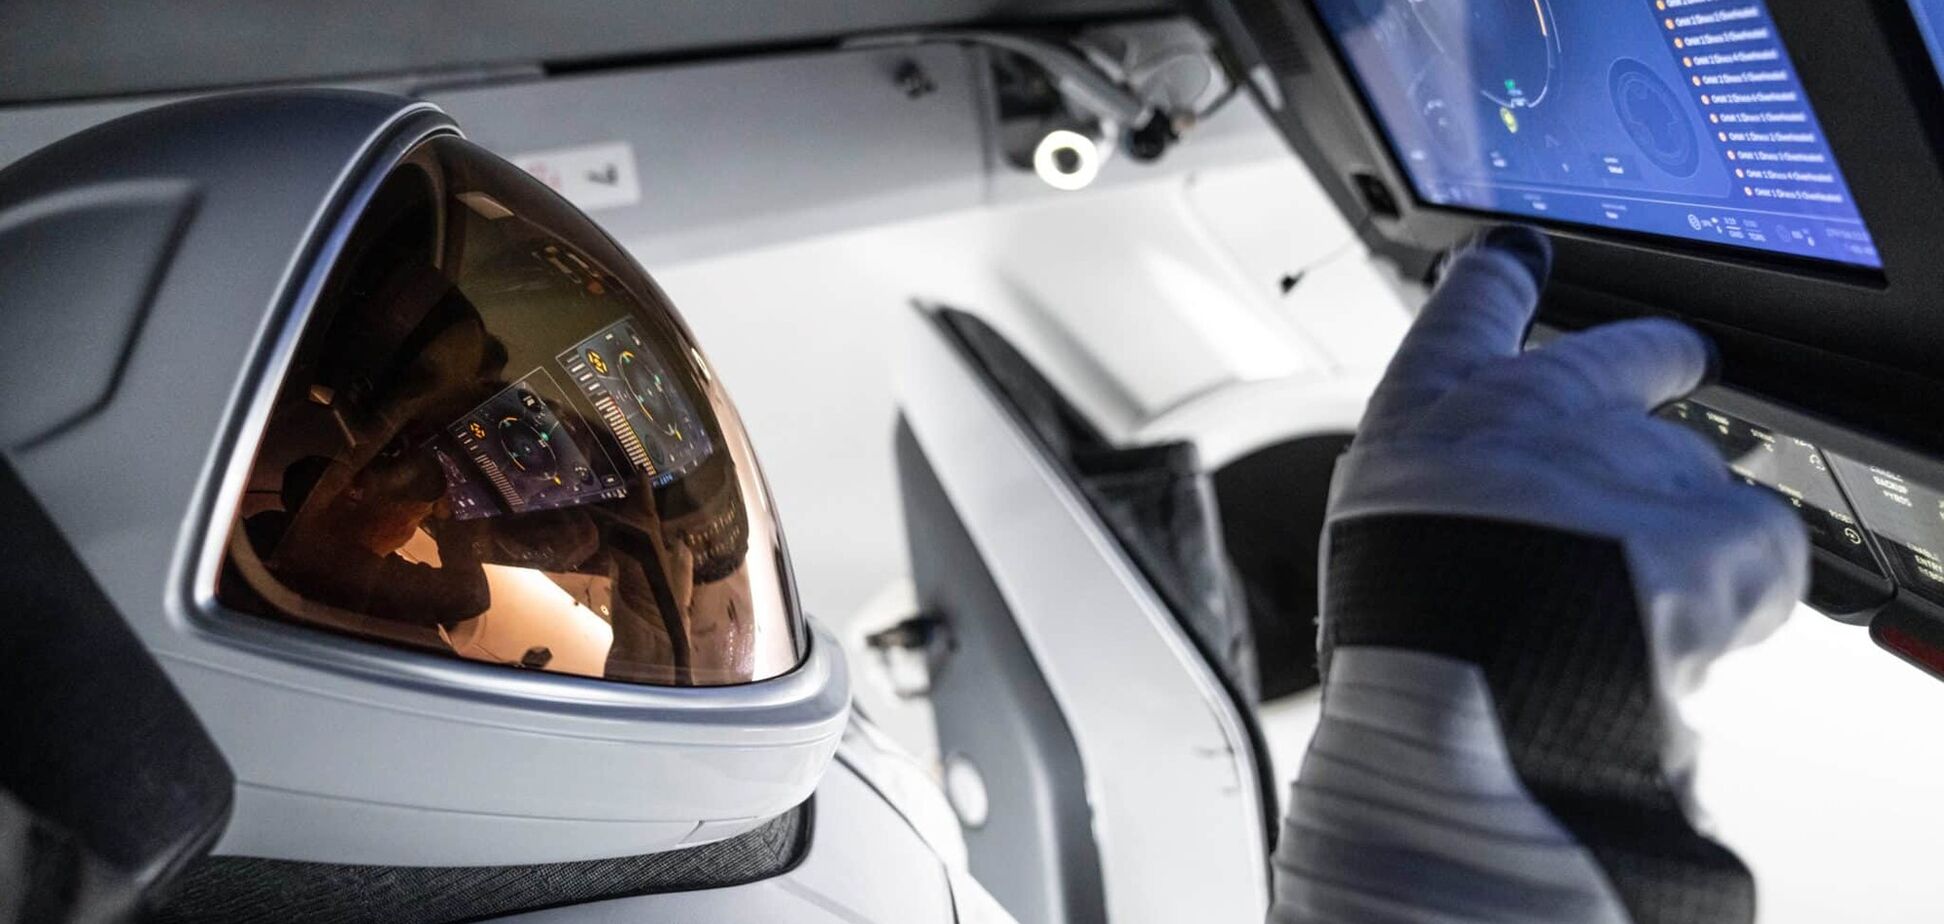 Будущее уже здесь: SpaceX Илона Маска создала скафандр для выхода туристов в открытый космос. Фото и видео